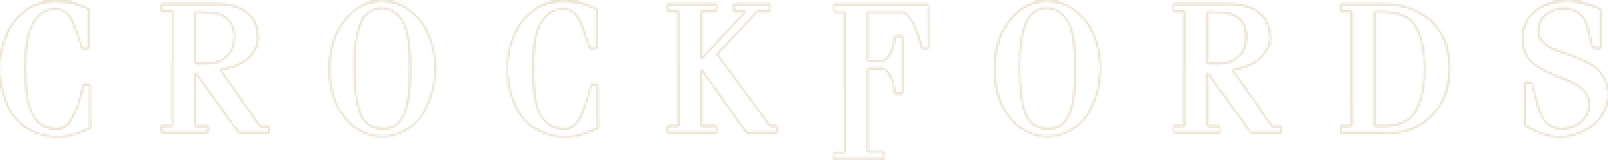 Crockfords Logo